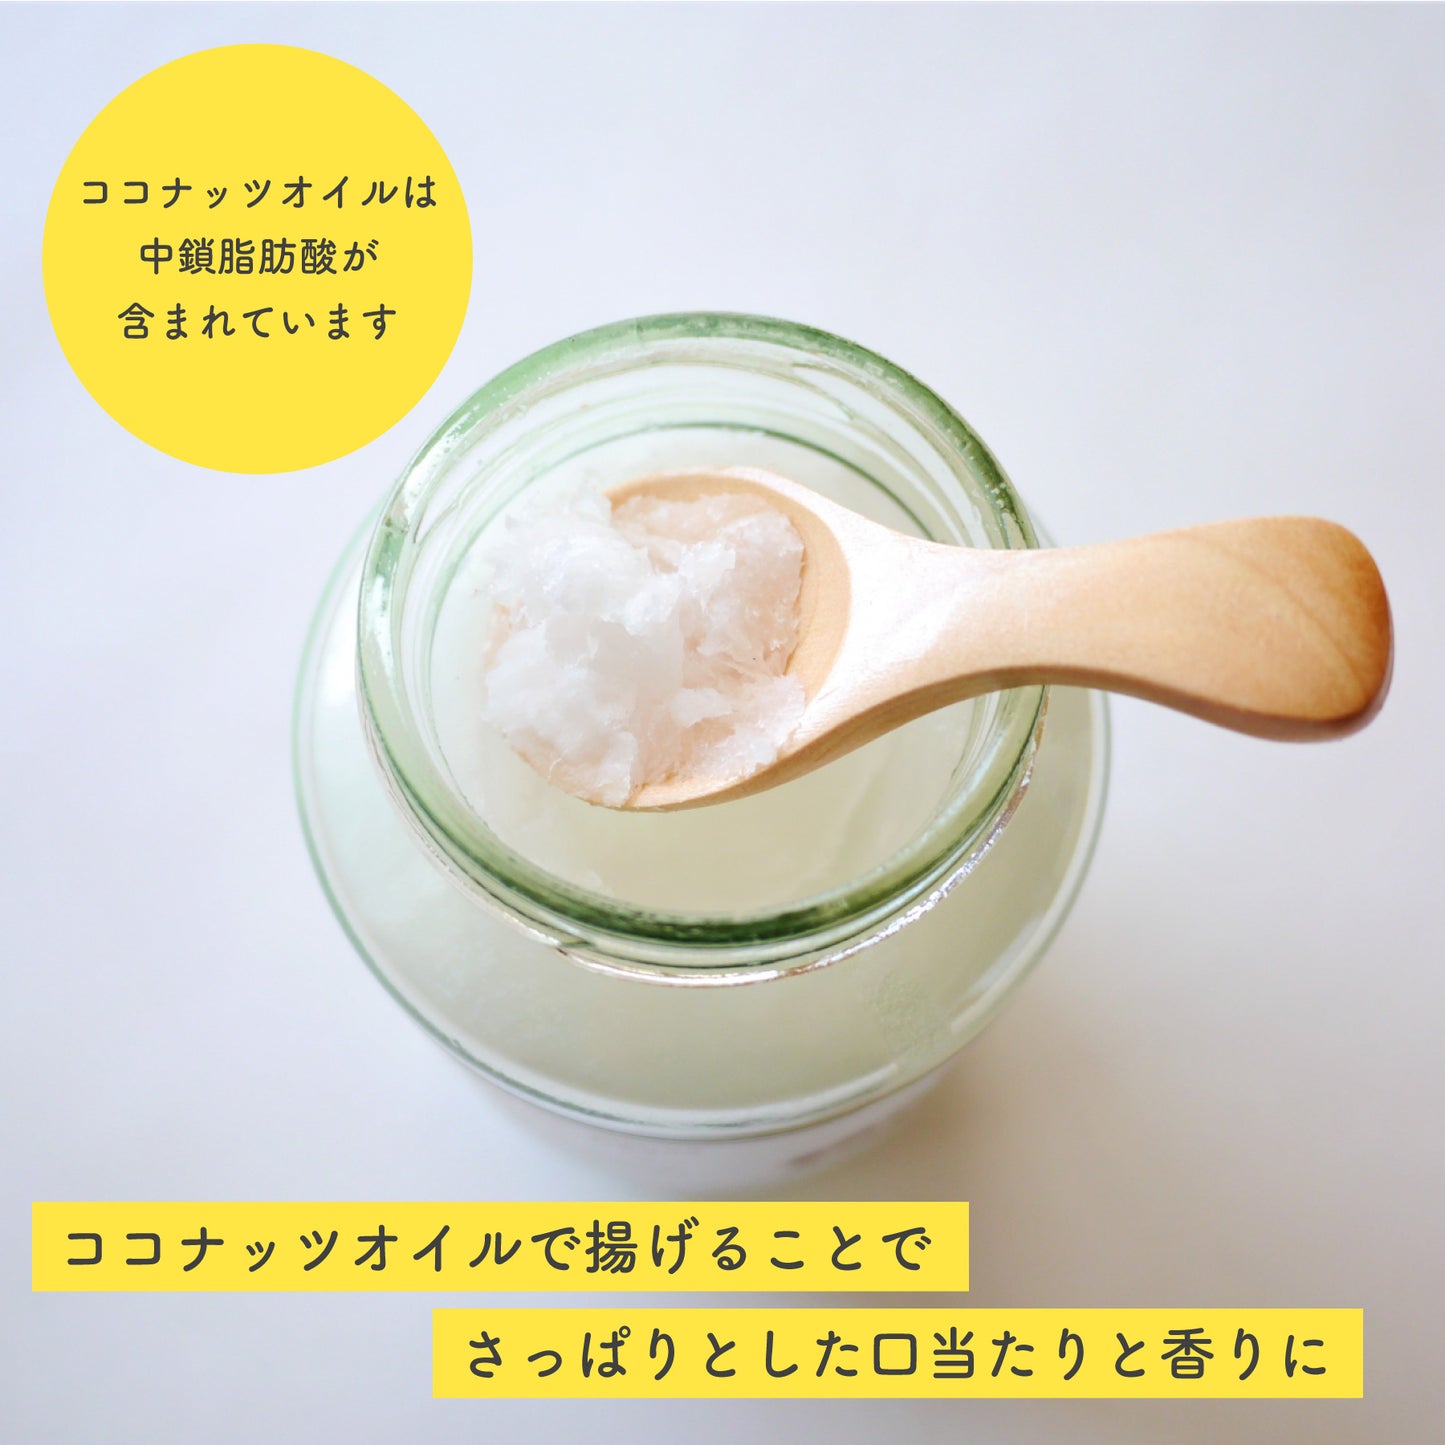 塩バナナチップス 150g 鹿児島錦江湾の塩 ココナッツオイル使用